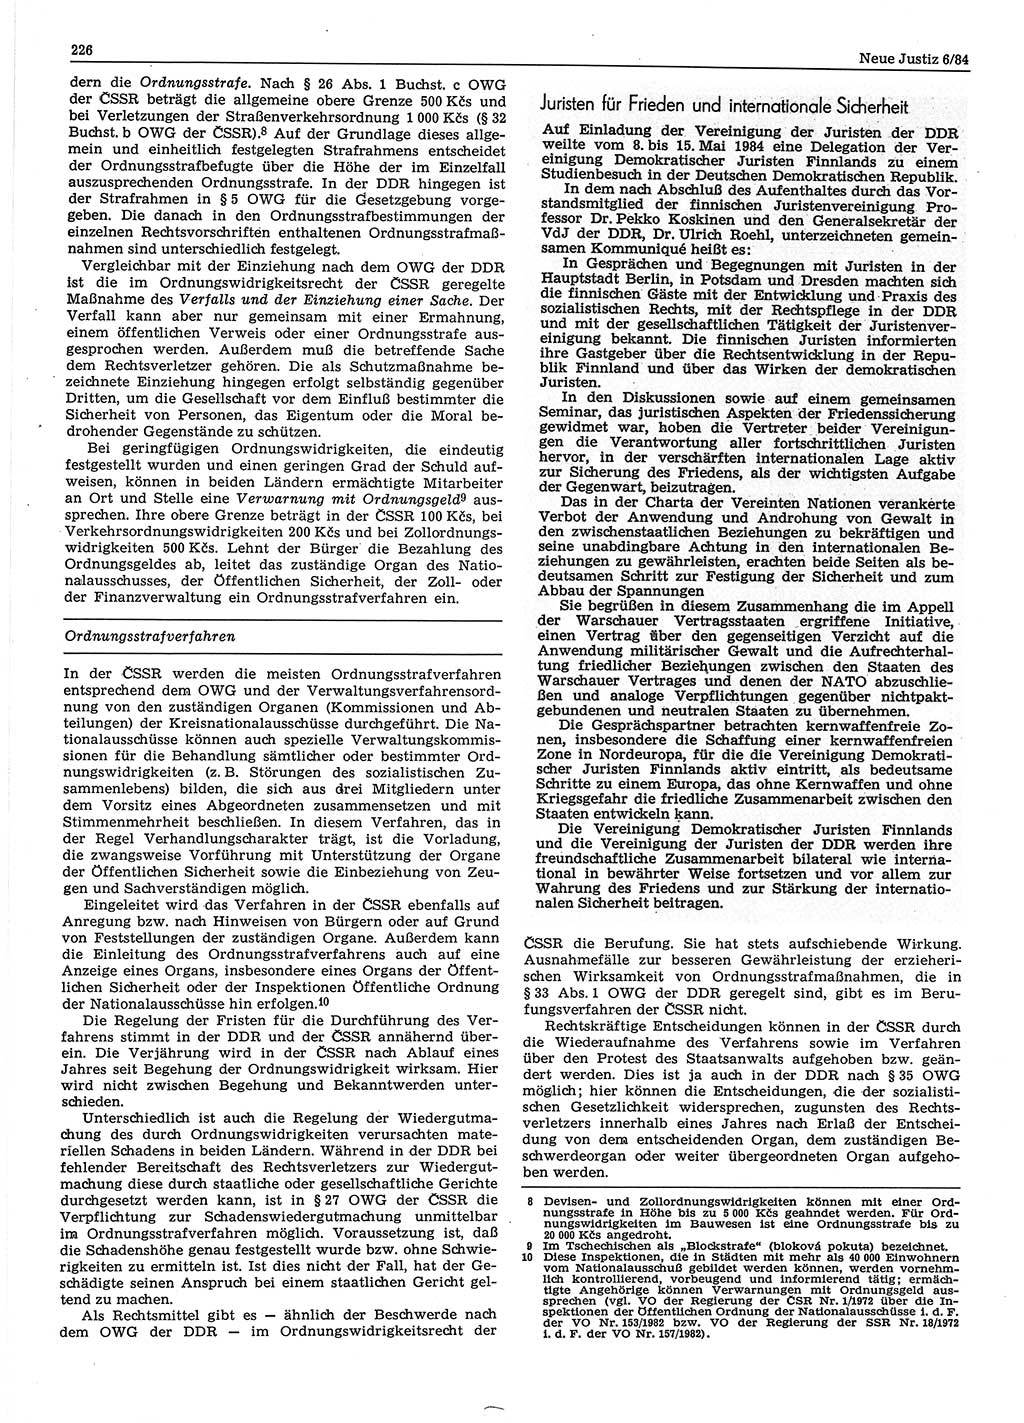 Neue Justiz (NJ), Zeitschrift für sozialistisches Recht und Gesetzlichkeit [Deutsche Demokratische Republik (DDR)], 38. Jahrgang 1984, Seite 226 (NJ DDR 1984, S. 226)